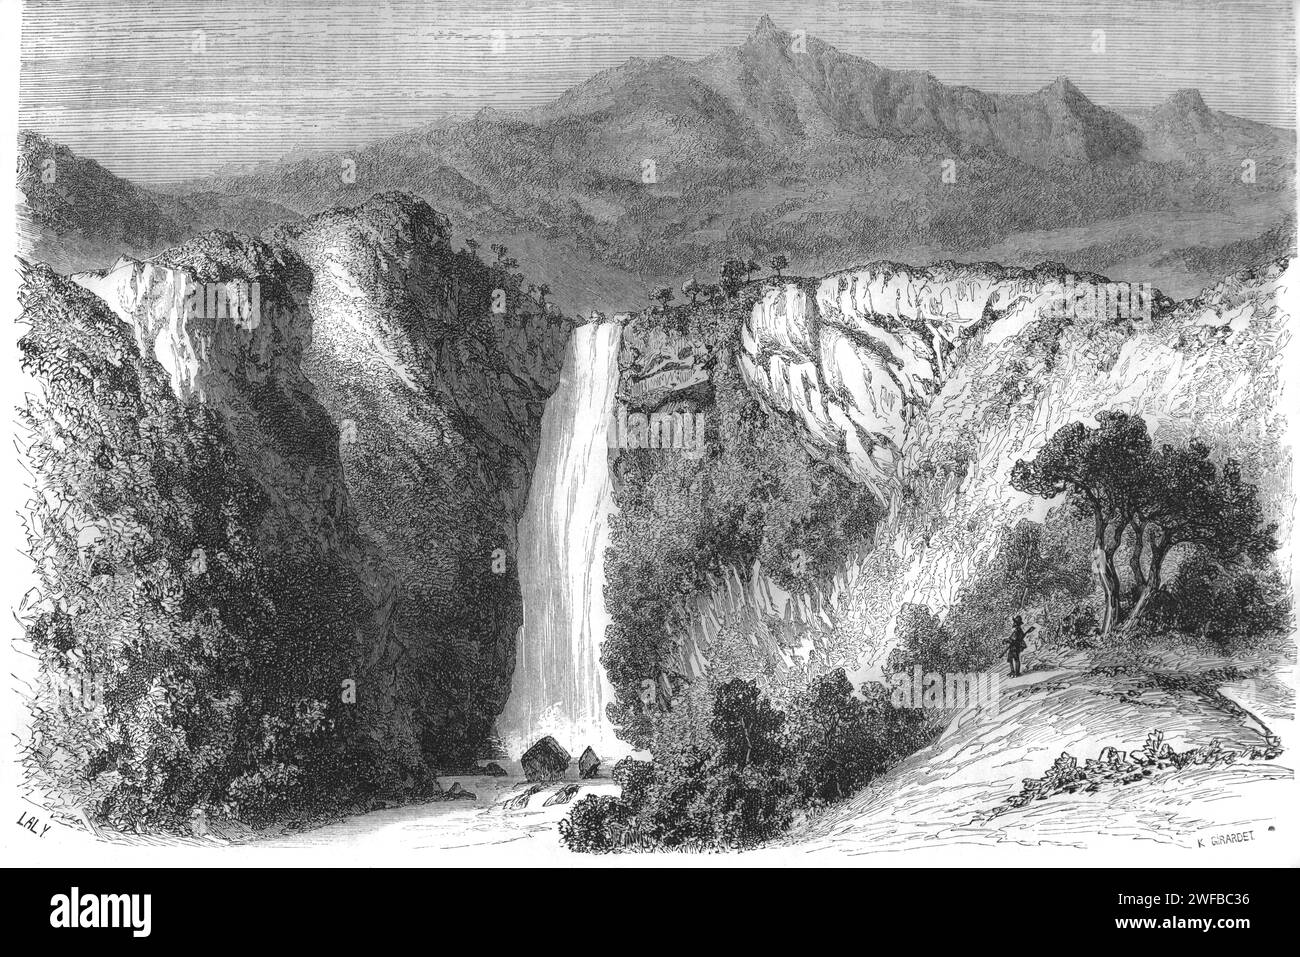 Chamarel Wasserfälle und Naturschutzgebiet im Rivière Noire District Mauritius. Vintage oder historische Gravur oder Illustration 1863 Stockfoto